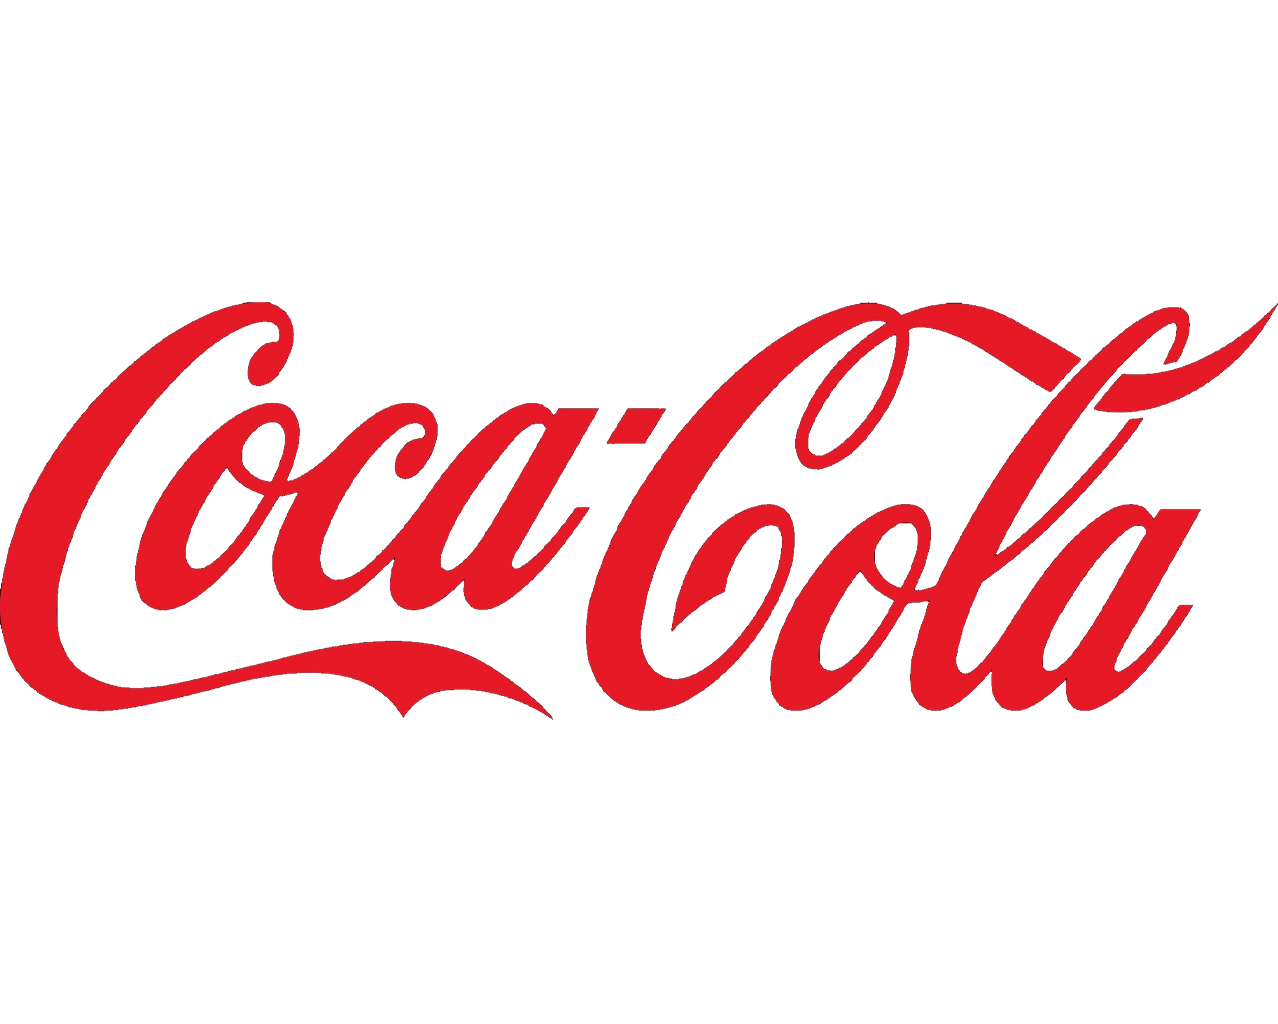 coca-cola-company